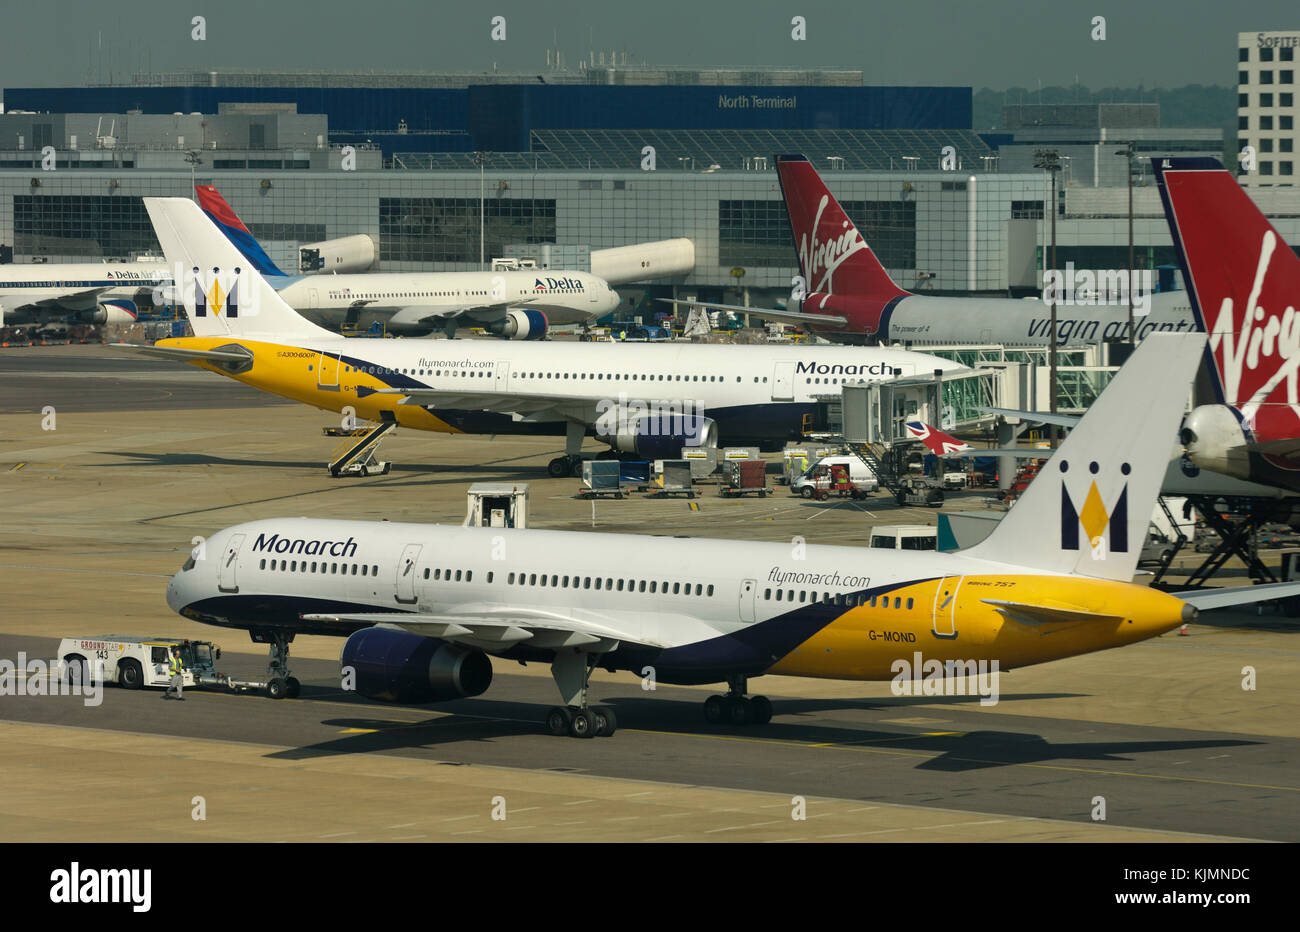 Un monarca Boeing 757-200 trainato da un rimorchiatore con un Airbus A300, due Virgin Atlantic 747-400s e Delta Air Lines 767-300 parcheggiato presso il terminale e Foto Stock